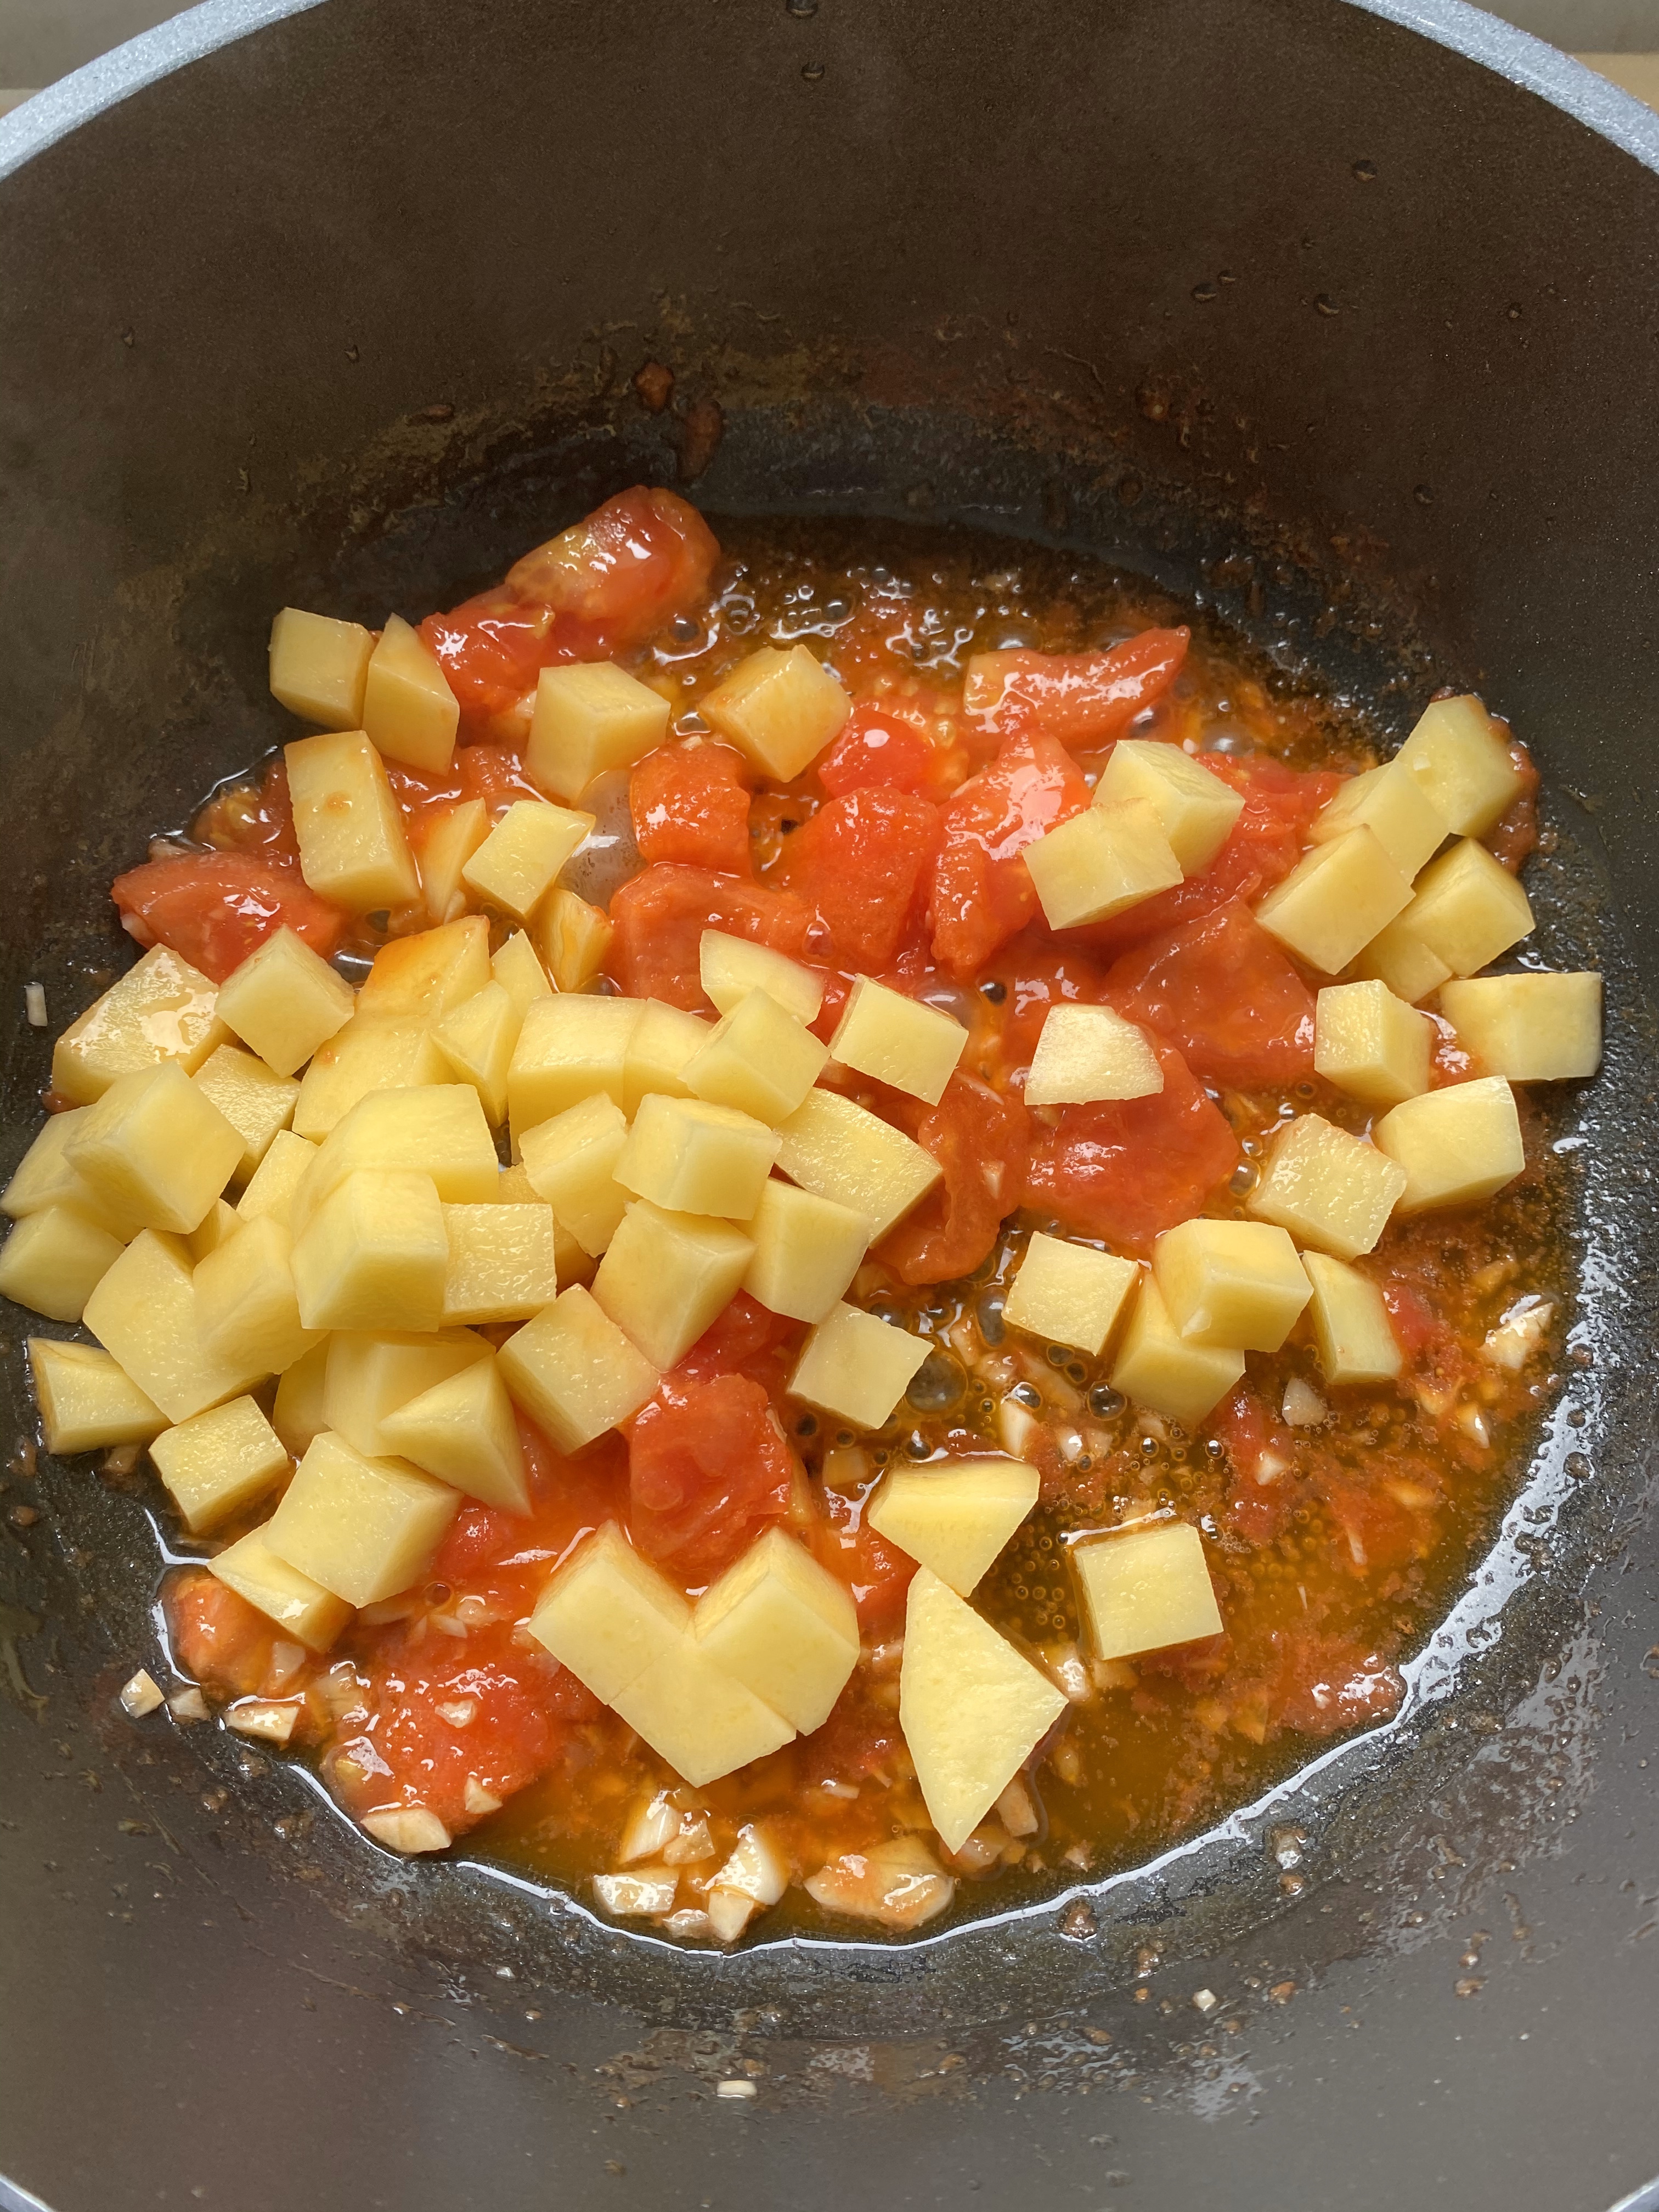 超开胃的番茄土豆肥牛汤‼️下米饭无敌了